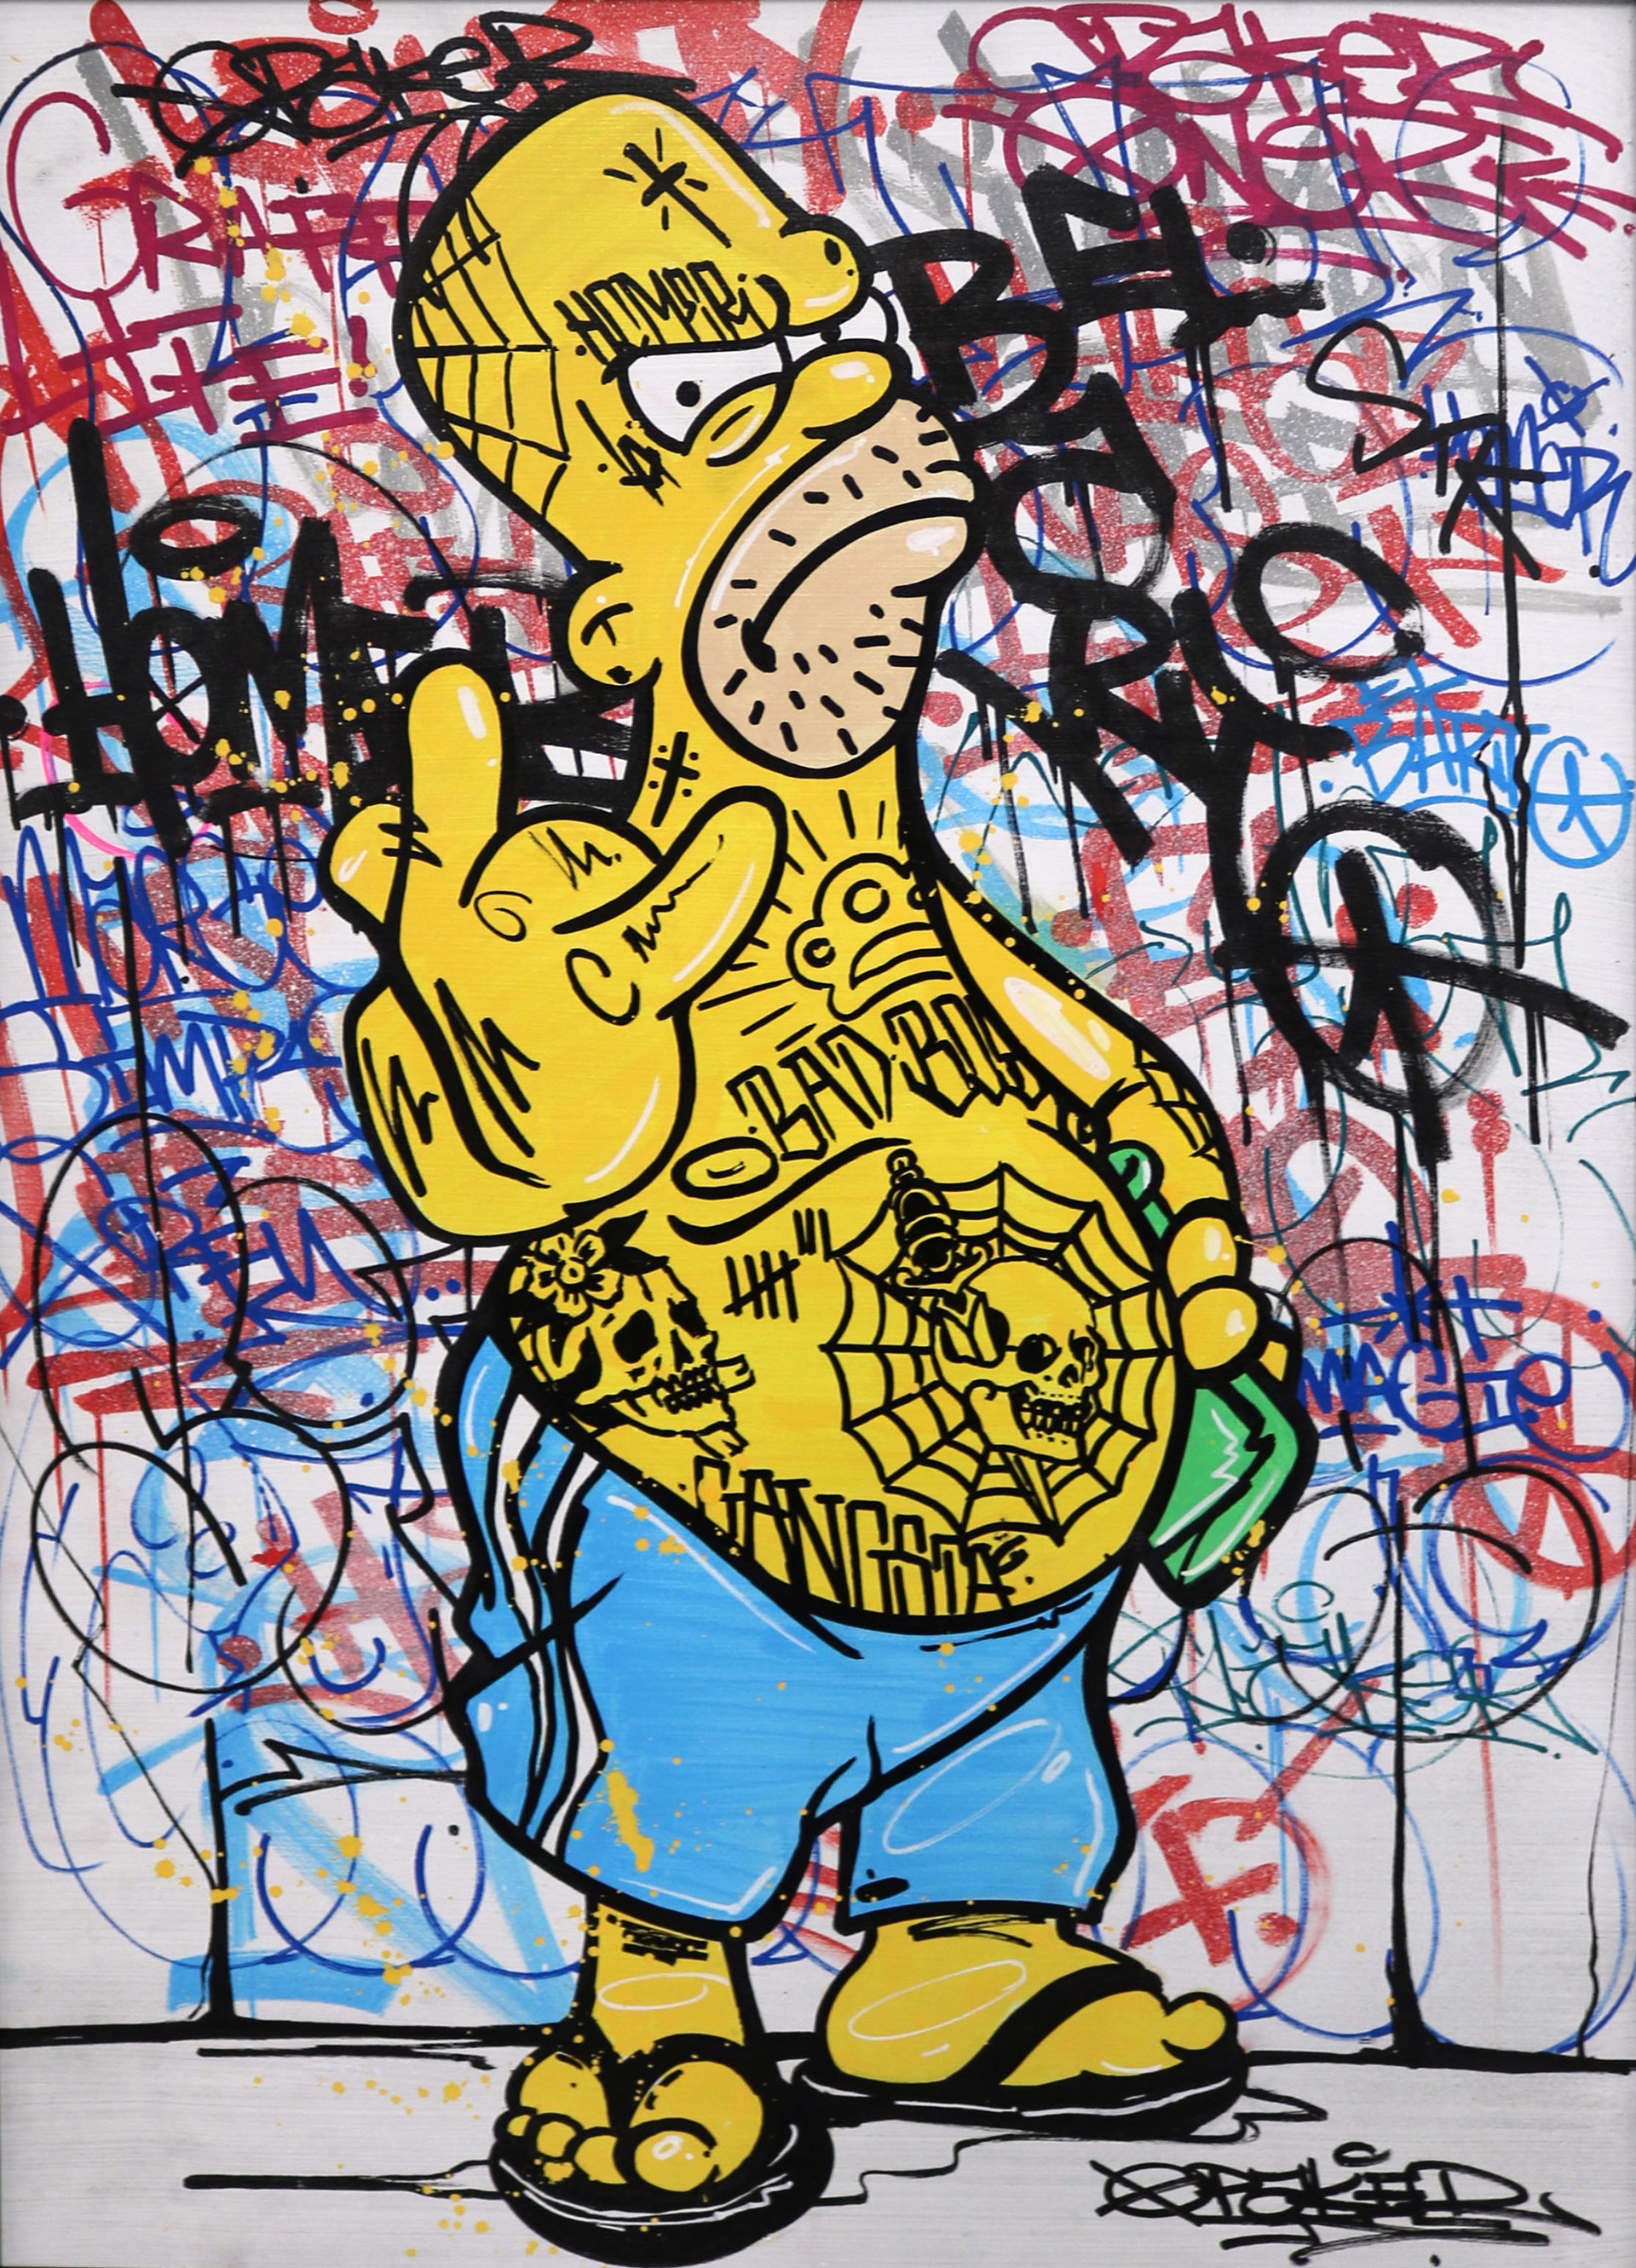 Bad Boy Homer by Opake One